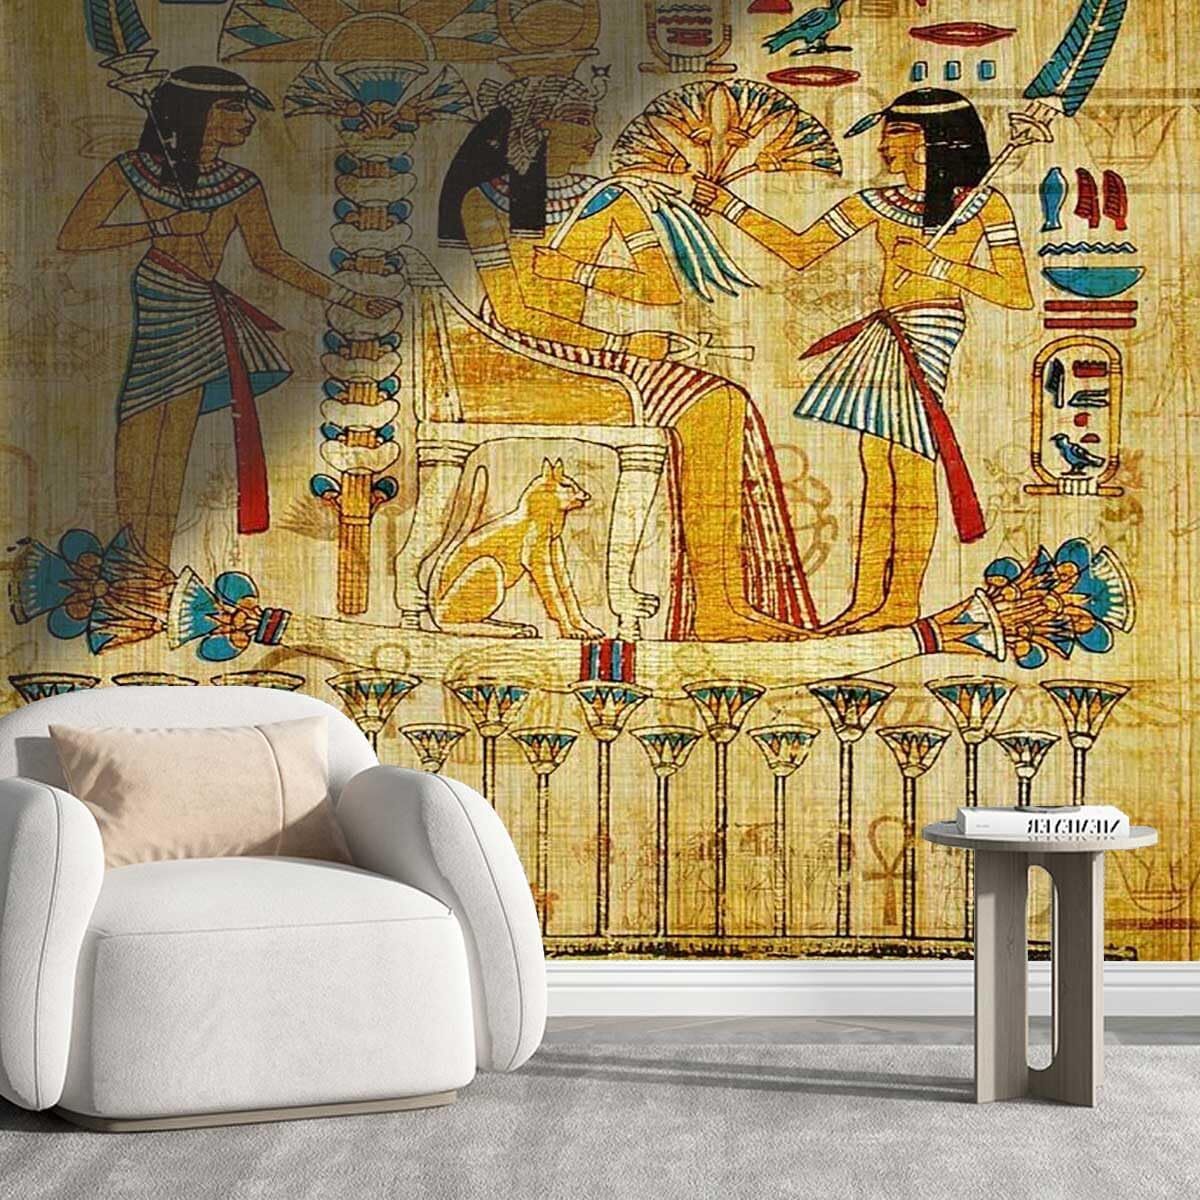 剥がして貼れる壁紙古代エジプト壁画 壁に貼り付け簡単にカットできます(幅) 250cm×（高さ）231cm壁装飾輸入品_画像1